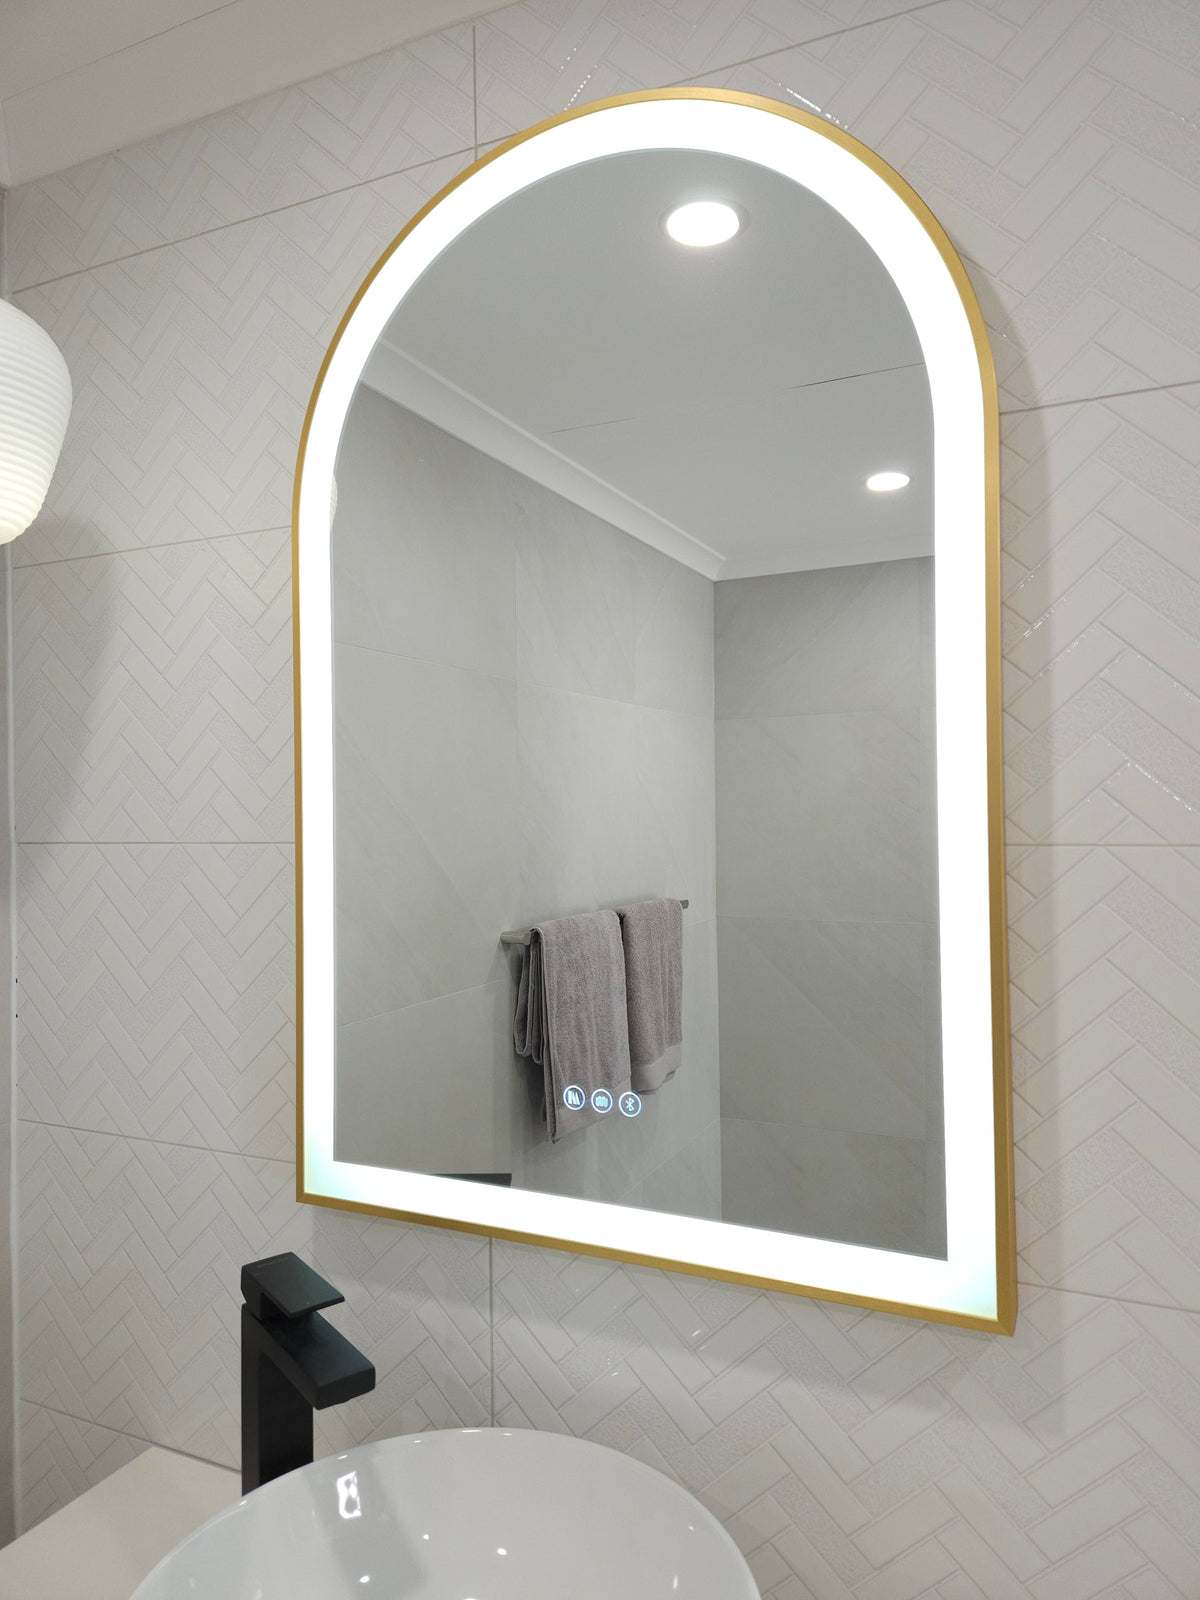  Stylish Gold-Framed Arch-Shaped LED Mirror illuminating White Bathroom